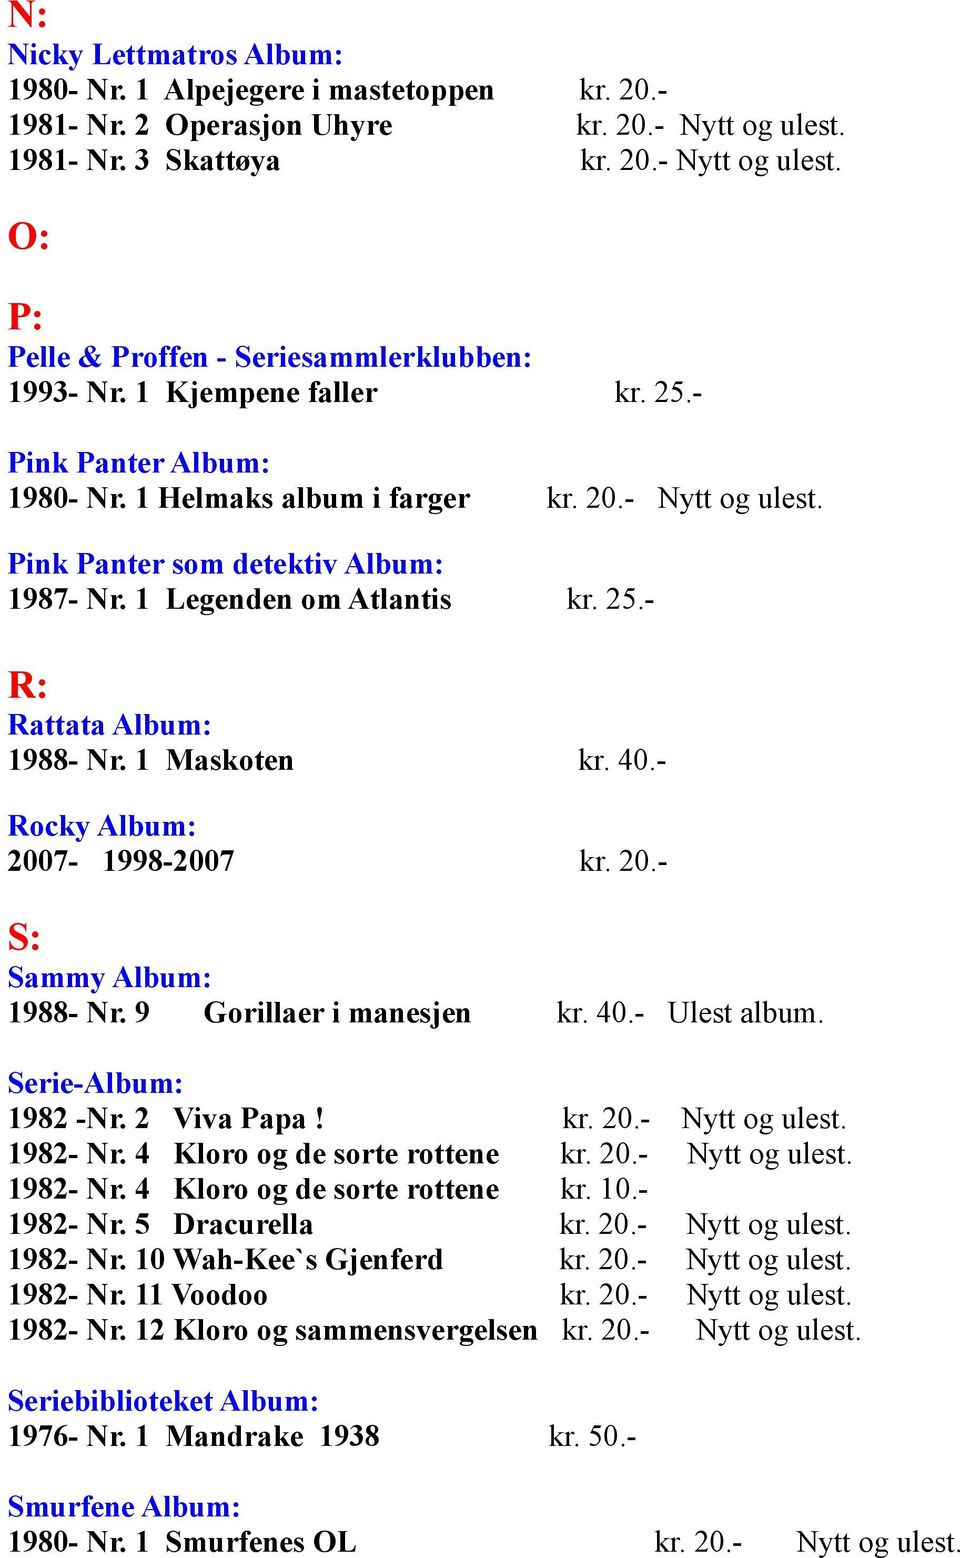 1 Maskoten kr. 40.- Rocky Album: 2007-1998-2007 kr. 20.- S: Sammy Album: 1988- Nr. 9 Gorillaer i manesjen kr. 40.- Ulest album. Serie-Album: 1982 -Nr. 2 Viva Papa! kr. 20.- Nytt og ulest. 1982- Nr.